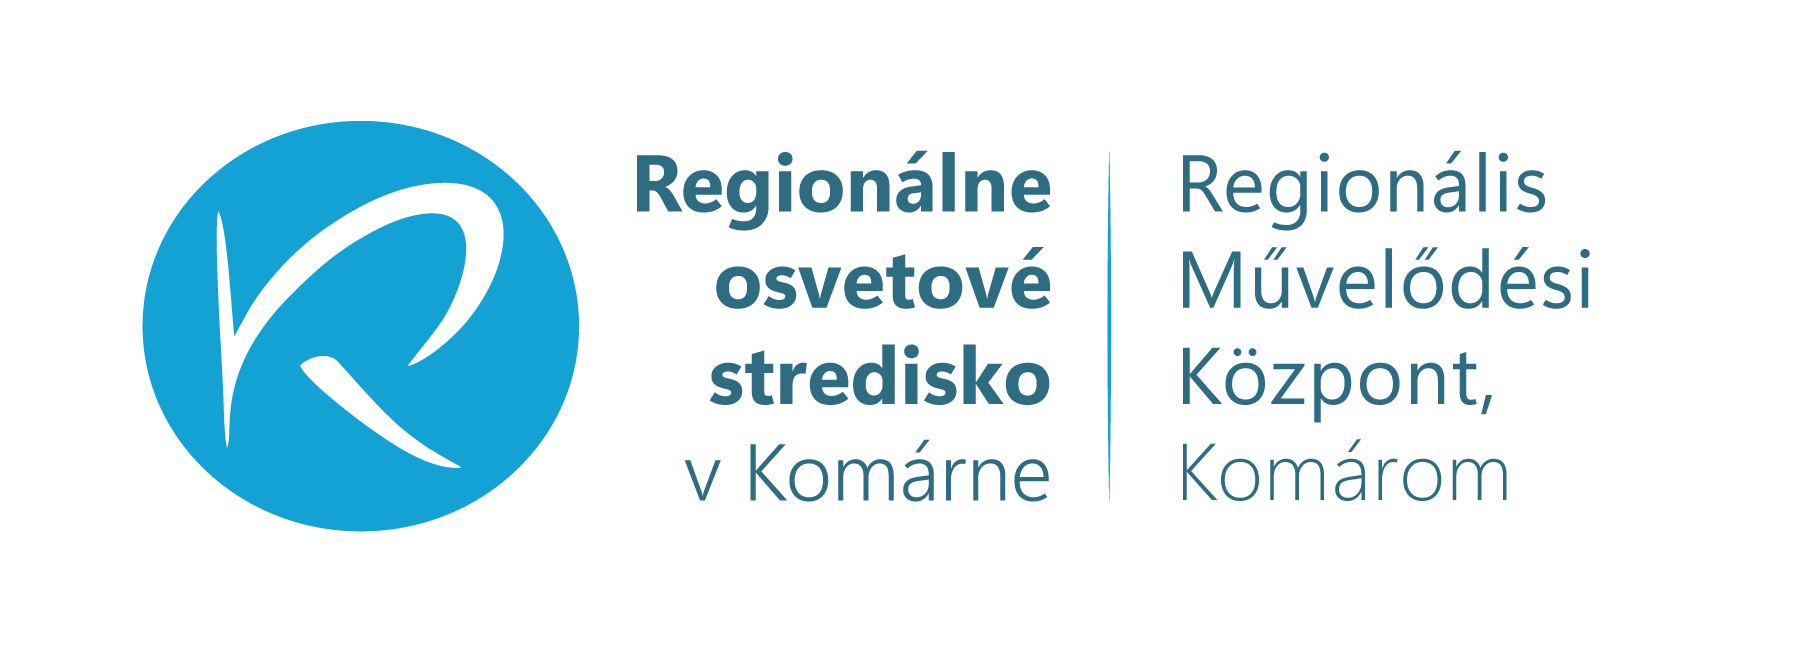 Regionálne osvetové stredisko v Komárne – Regionális Művelődési Központ, Komárom